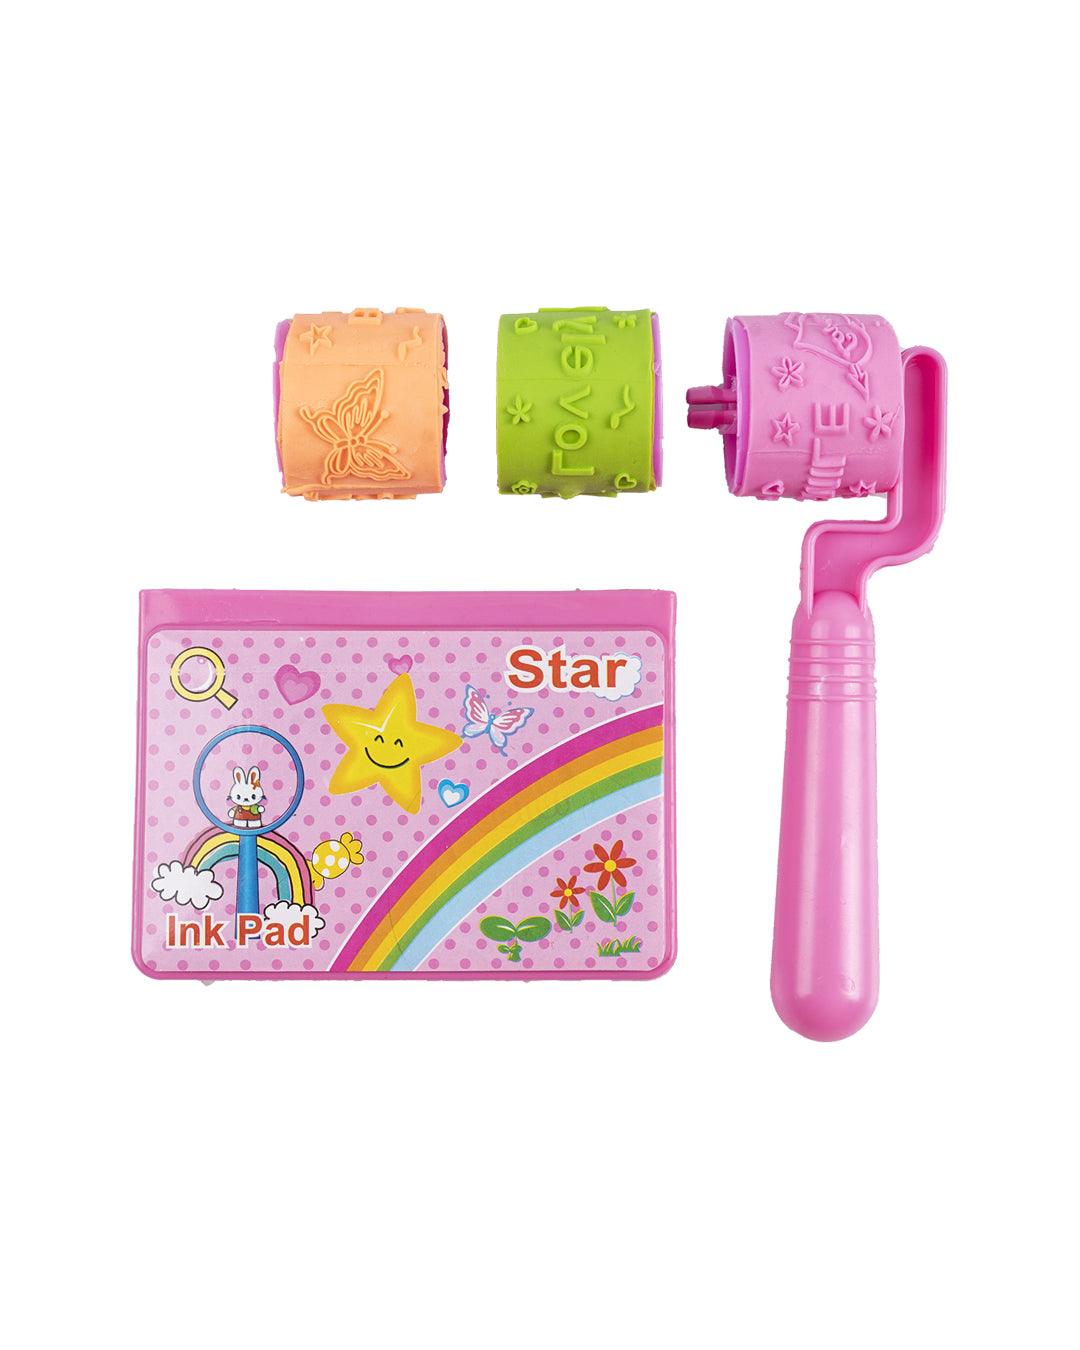 Stamp Roller Set, Stamps & Ink Pad, Pink, Plastic & TPR - MARKET 99